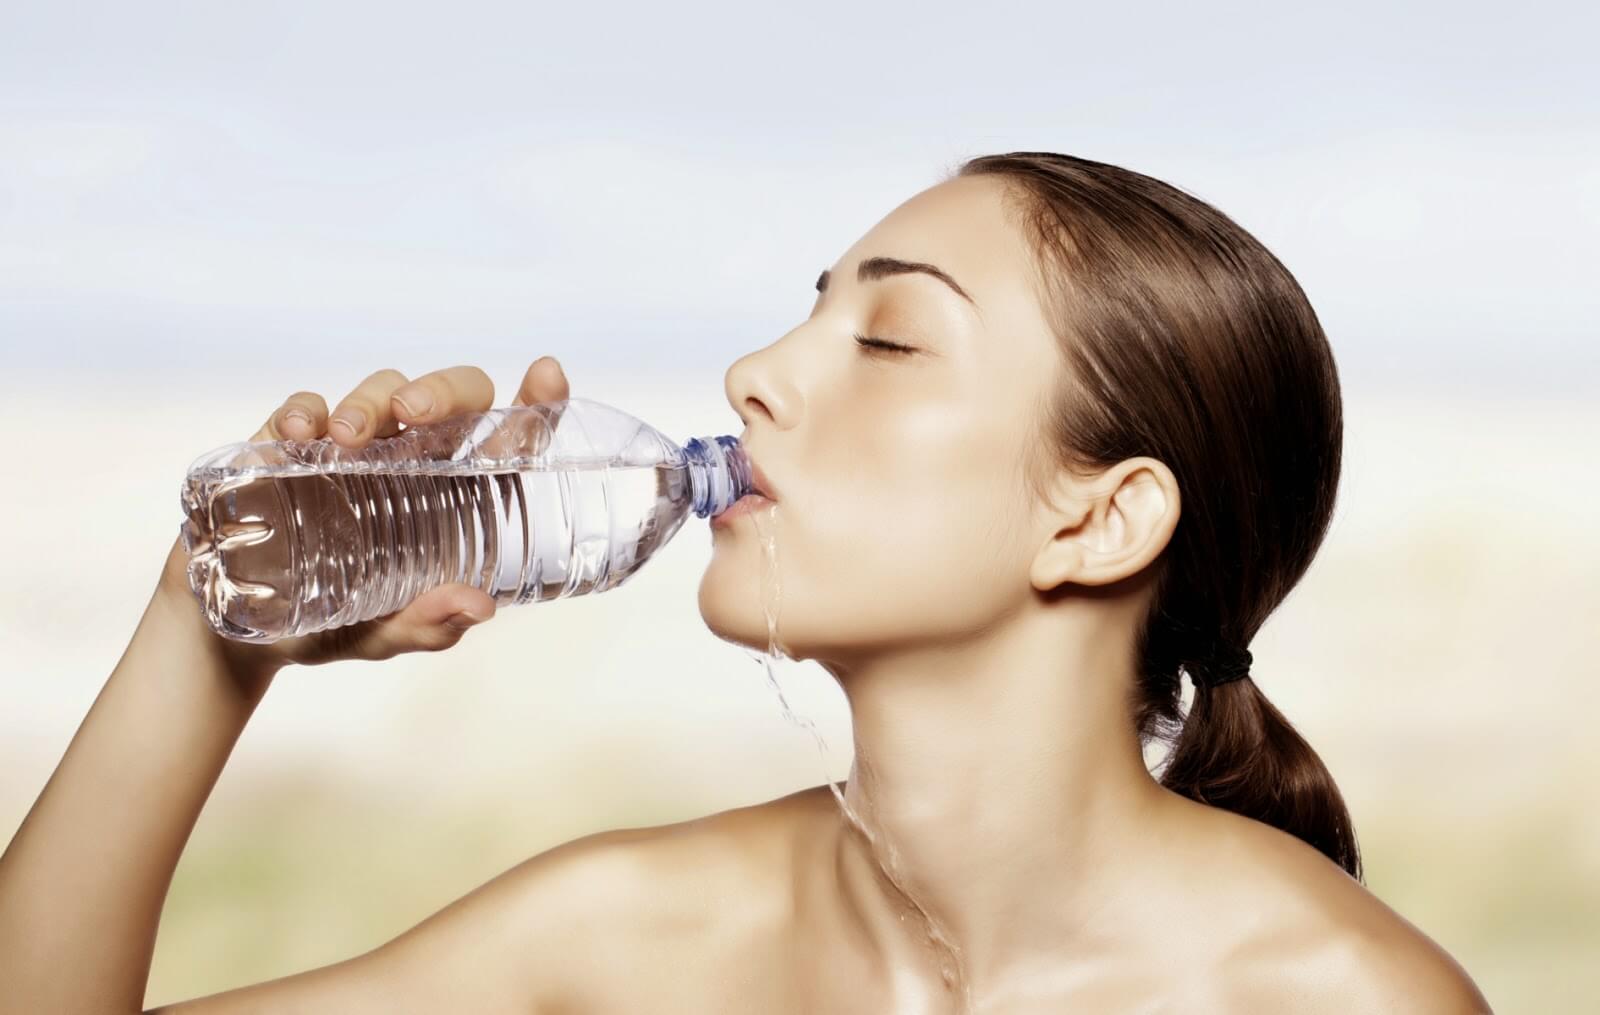 Девушка льет воду. Девушка пьет воду. Пьет воду из бутылки. Девушка с бутылкой воды. Человек пьет воду.